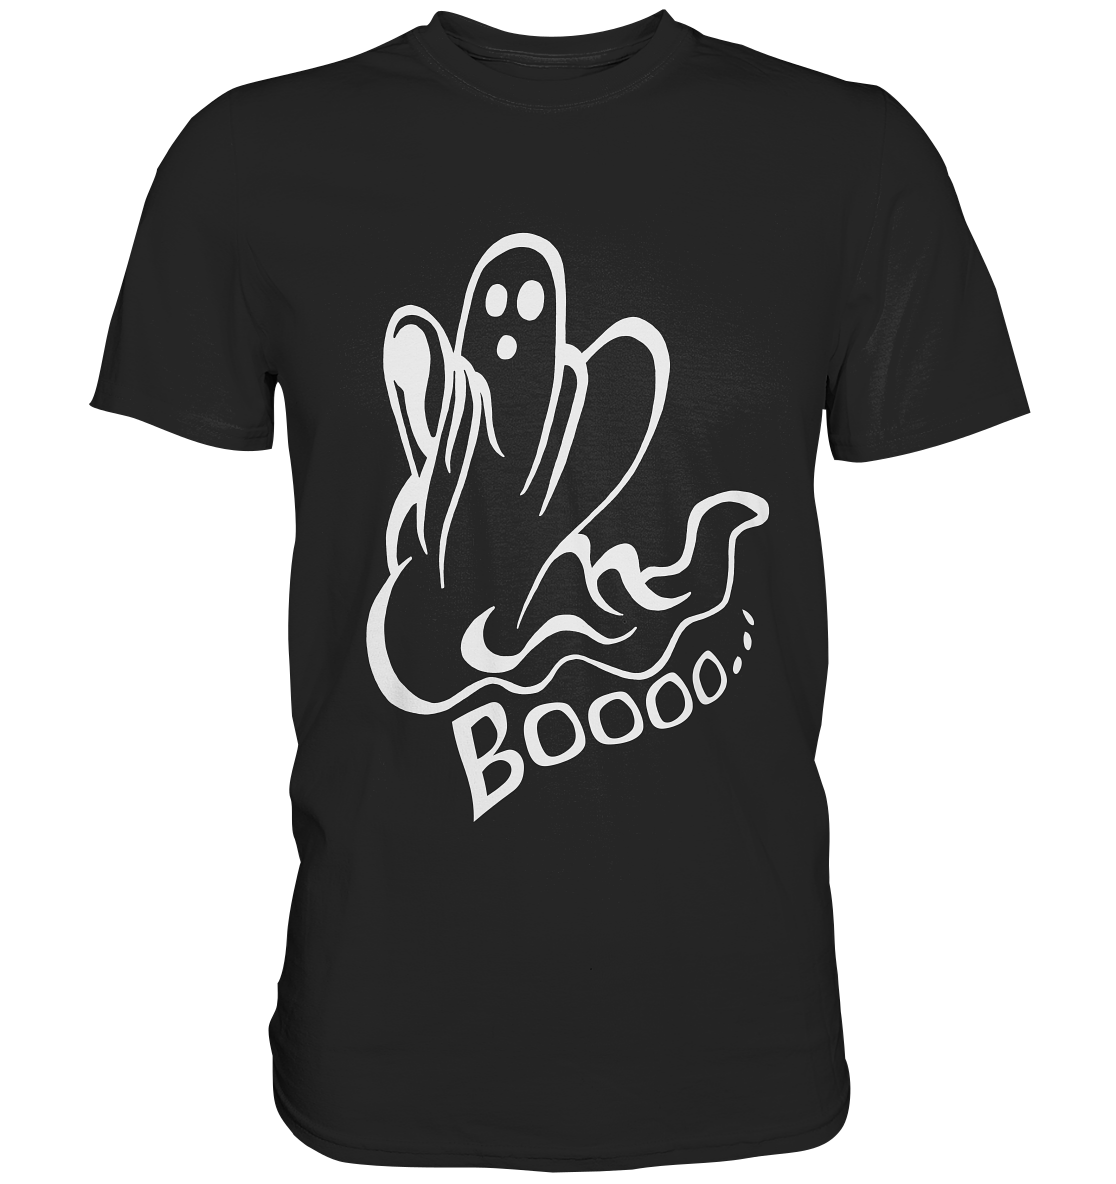 Booo... großes Gespenst. Geist Horror Halloween - Unisex Premium Shirt